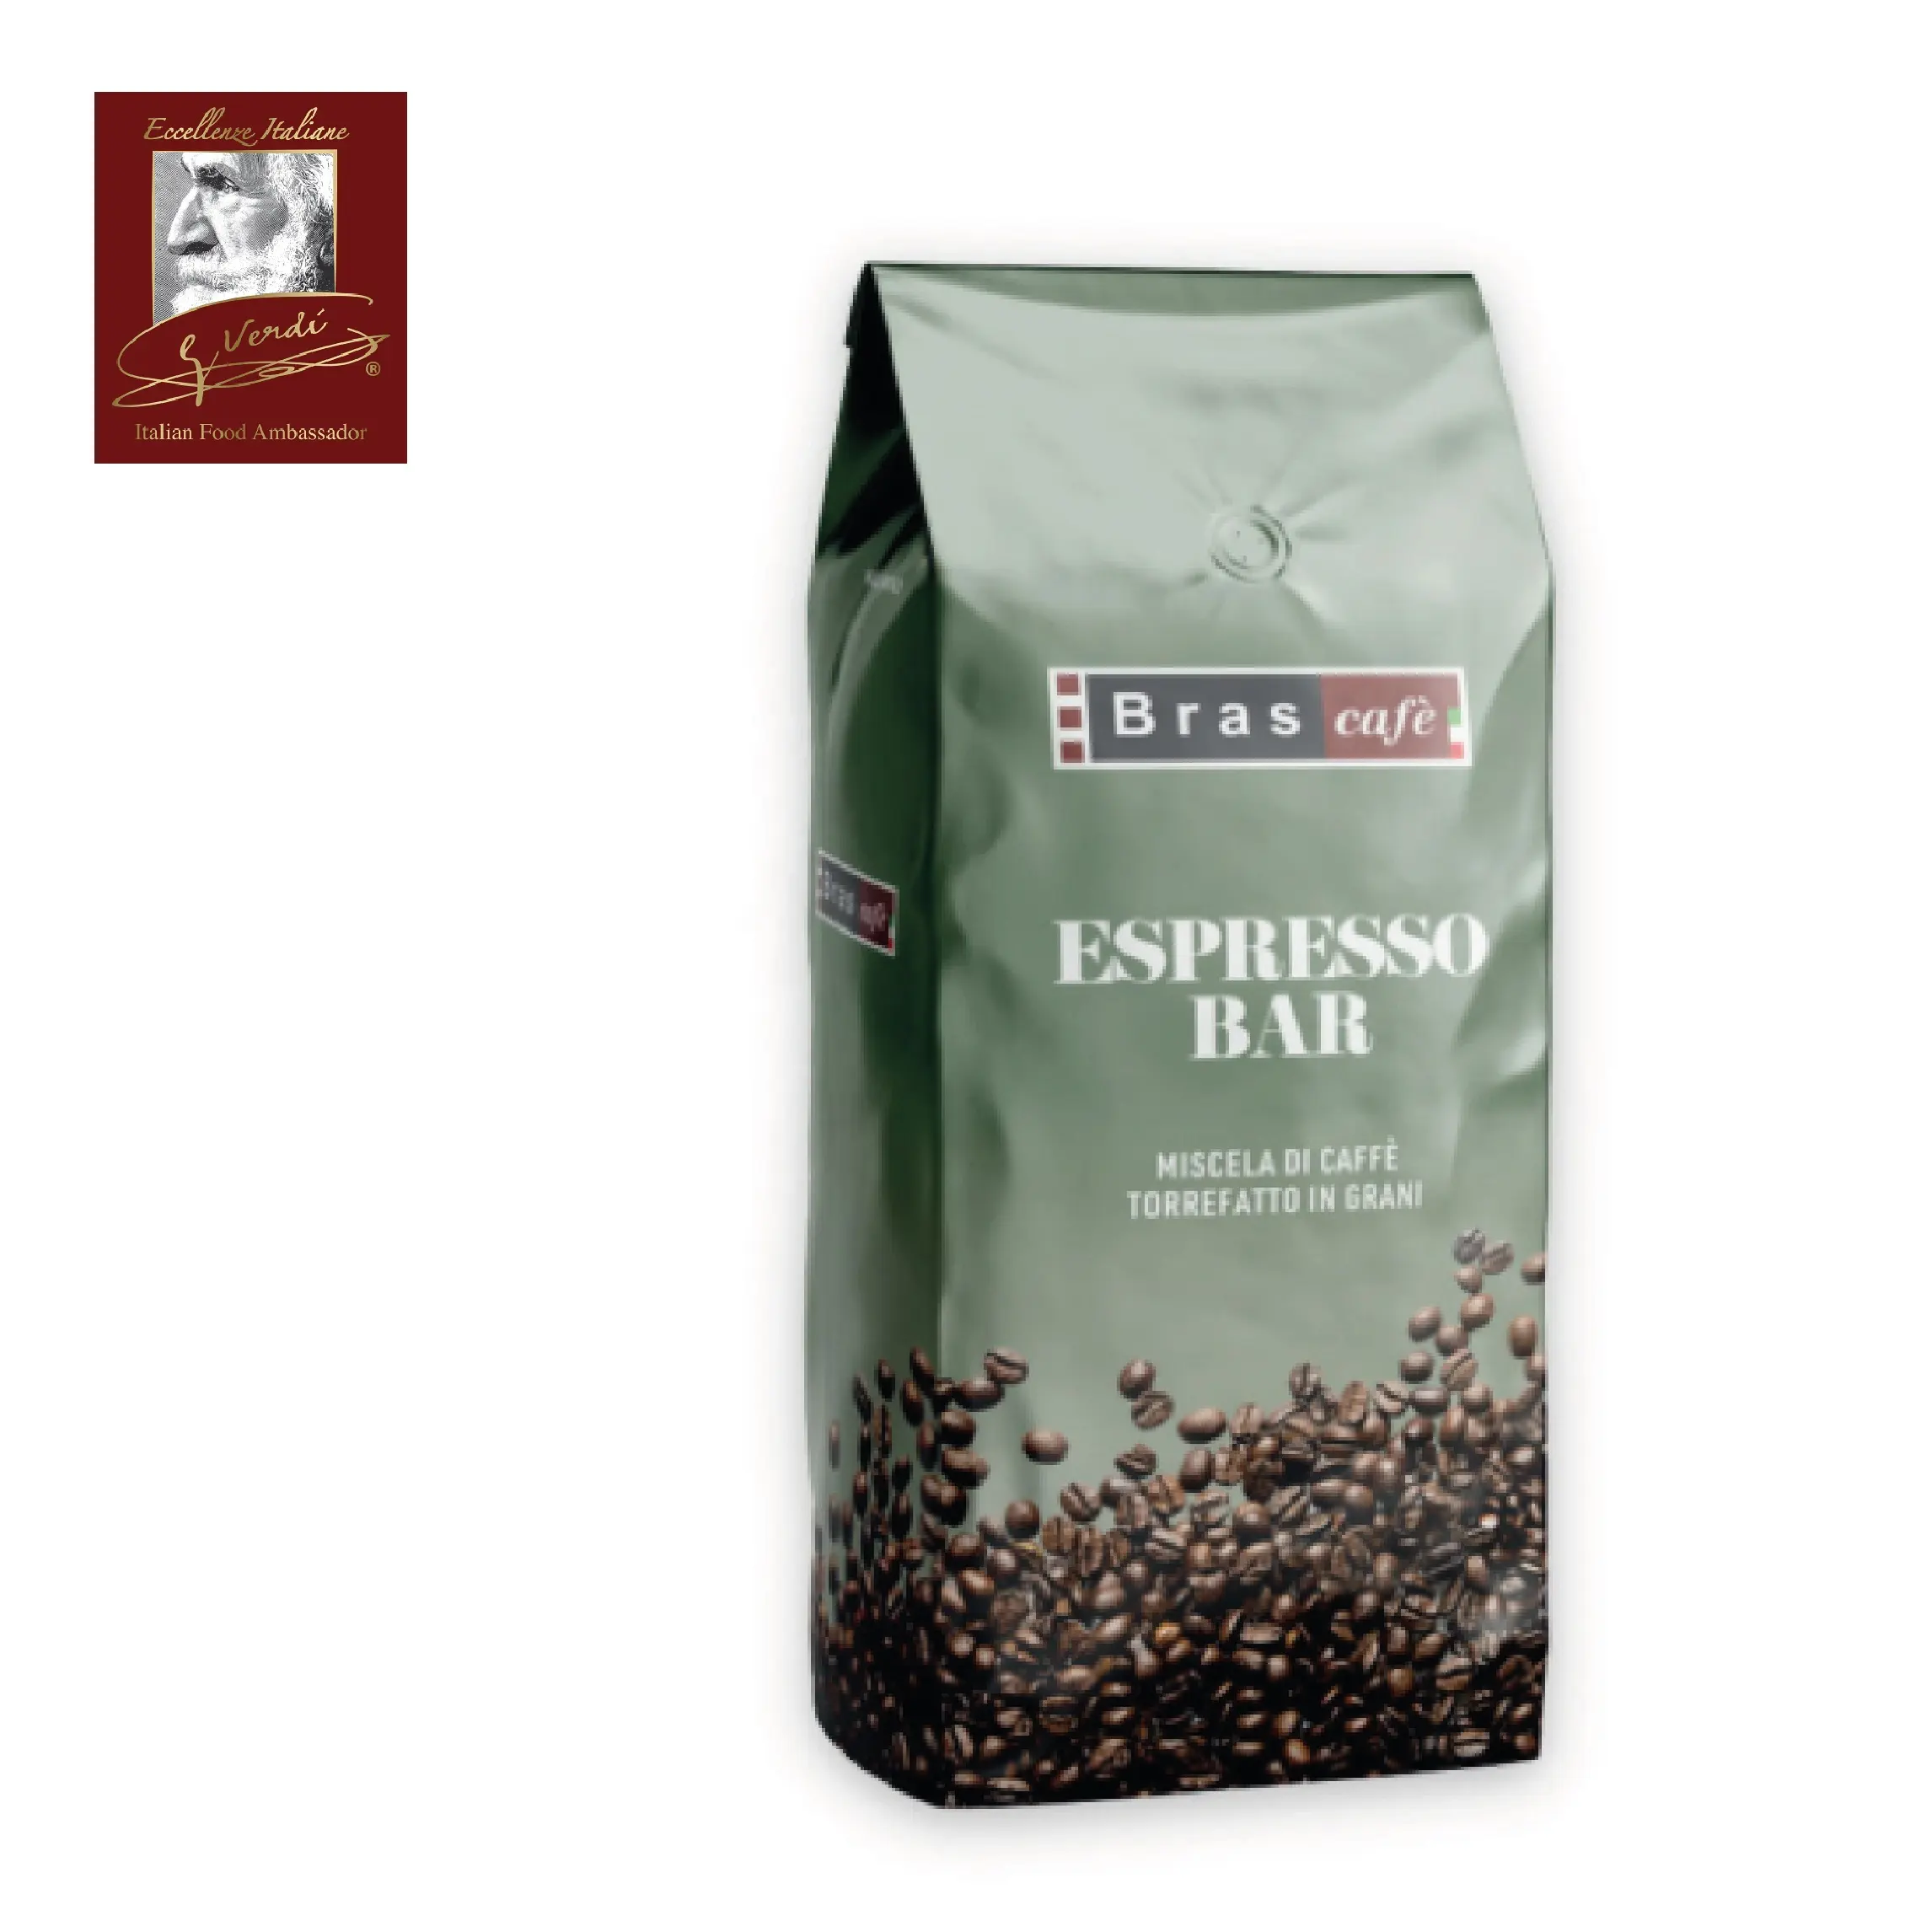 Bolsa de café de mezcla fuerte, Espresso Giuseppe Verdi, selección de café, mezcla de café, 1Kg